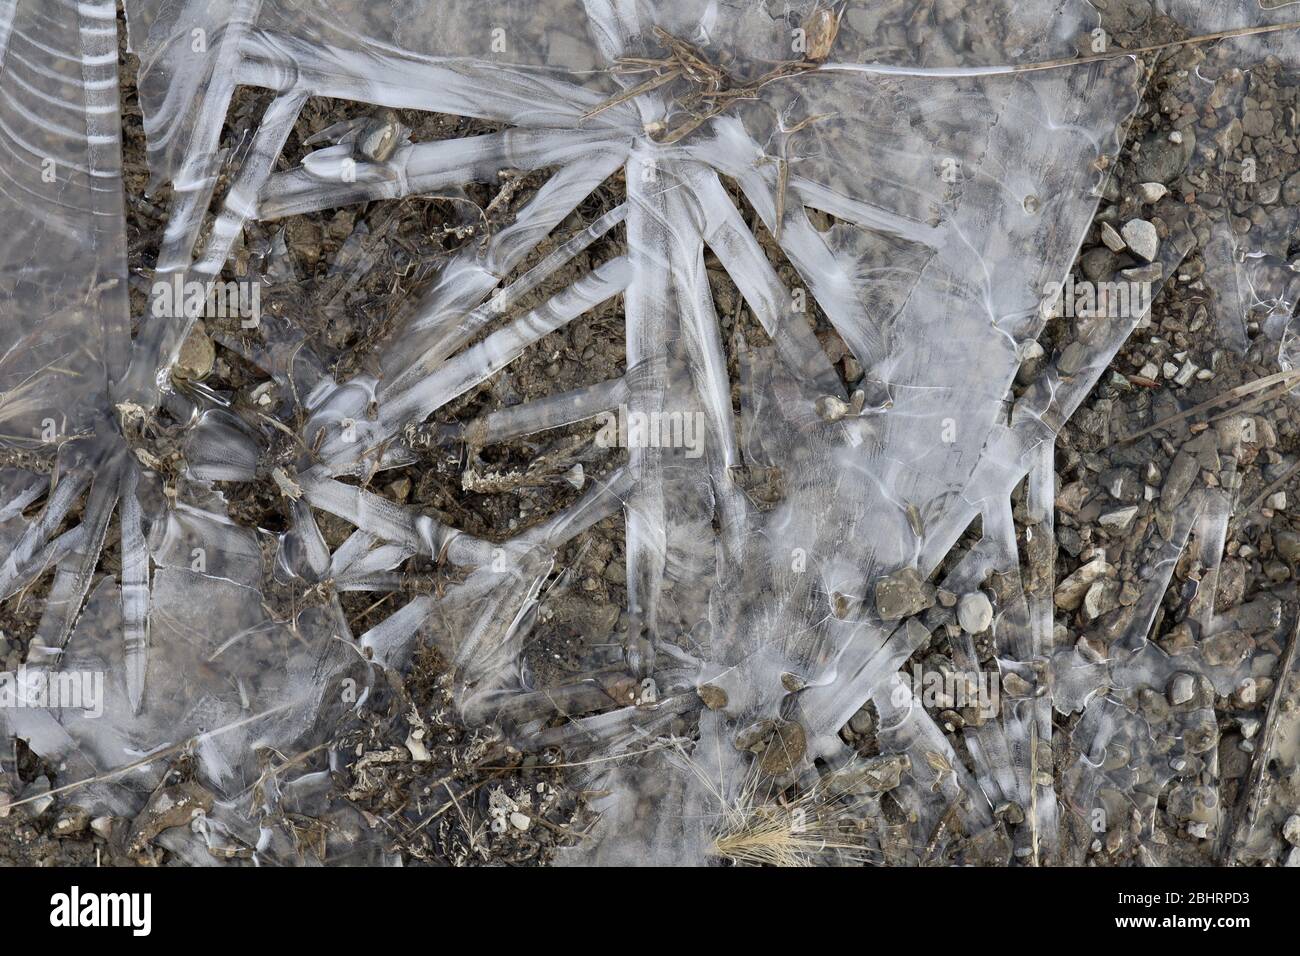 Gros plan de formations de glace semi-transparentes avec différents motifs et textures, avec des cailloux dans une flaque gelée, y compris une certaine matière végétale. Banque D'Images